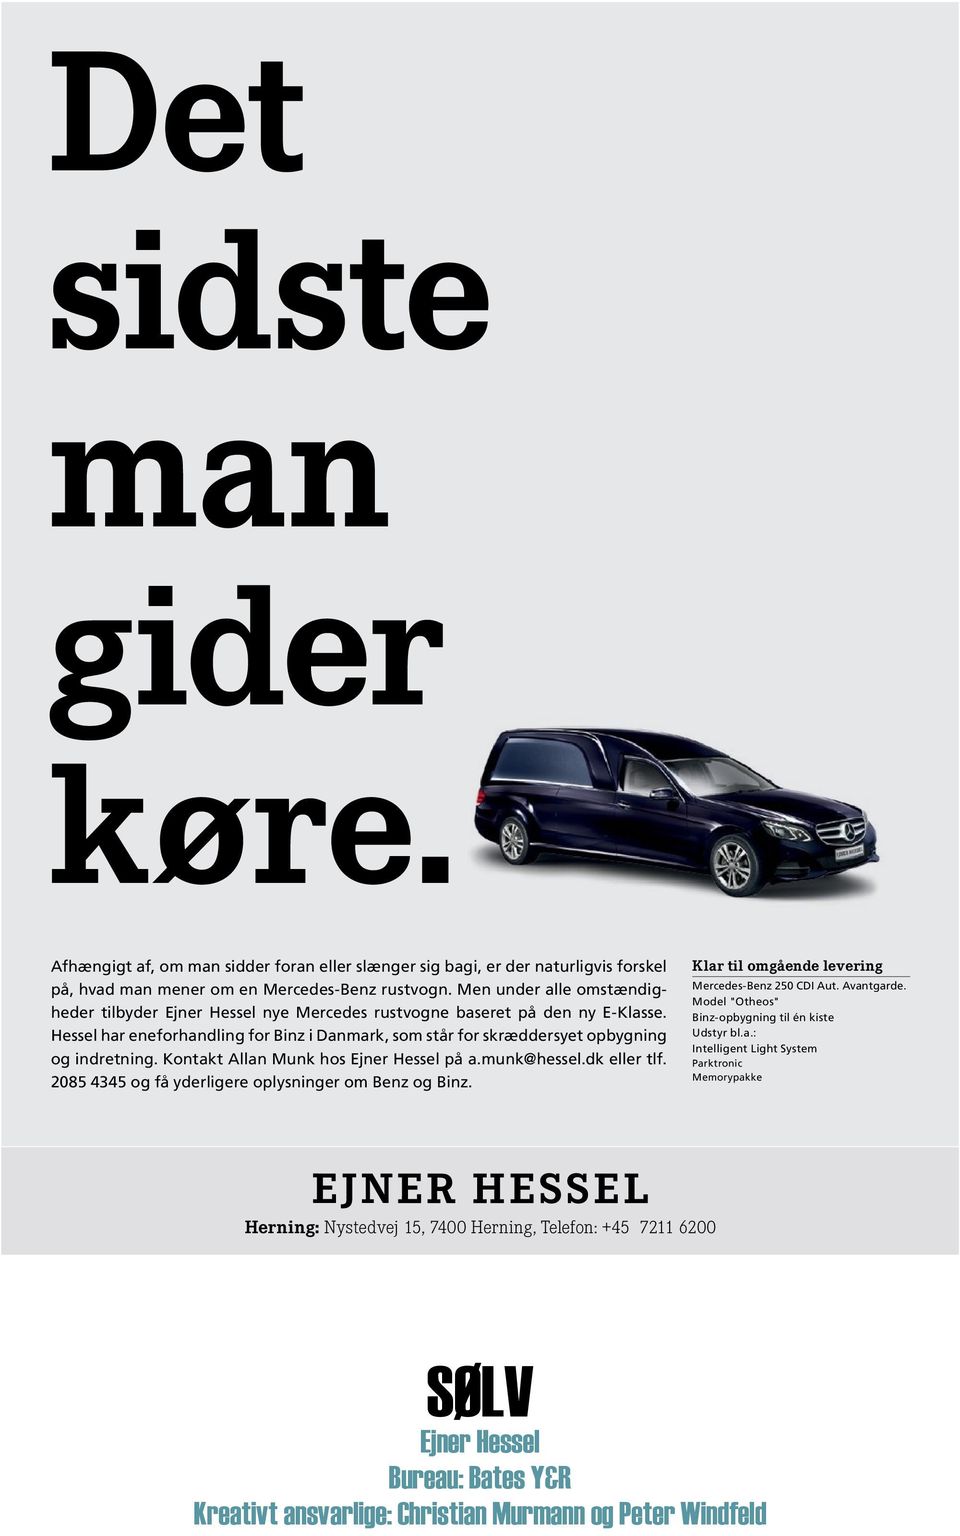 Kontakt Allan Munk hos Ejner Hessel på a.munk@hessel.dk eller tlf. 2085 4345 og få yderligere oplysninger om Benz og Binz. Klar til omgående levering Mercedes-Benz 250 CDI Aut. Avantgarde.